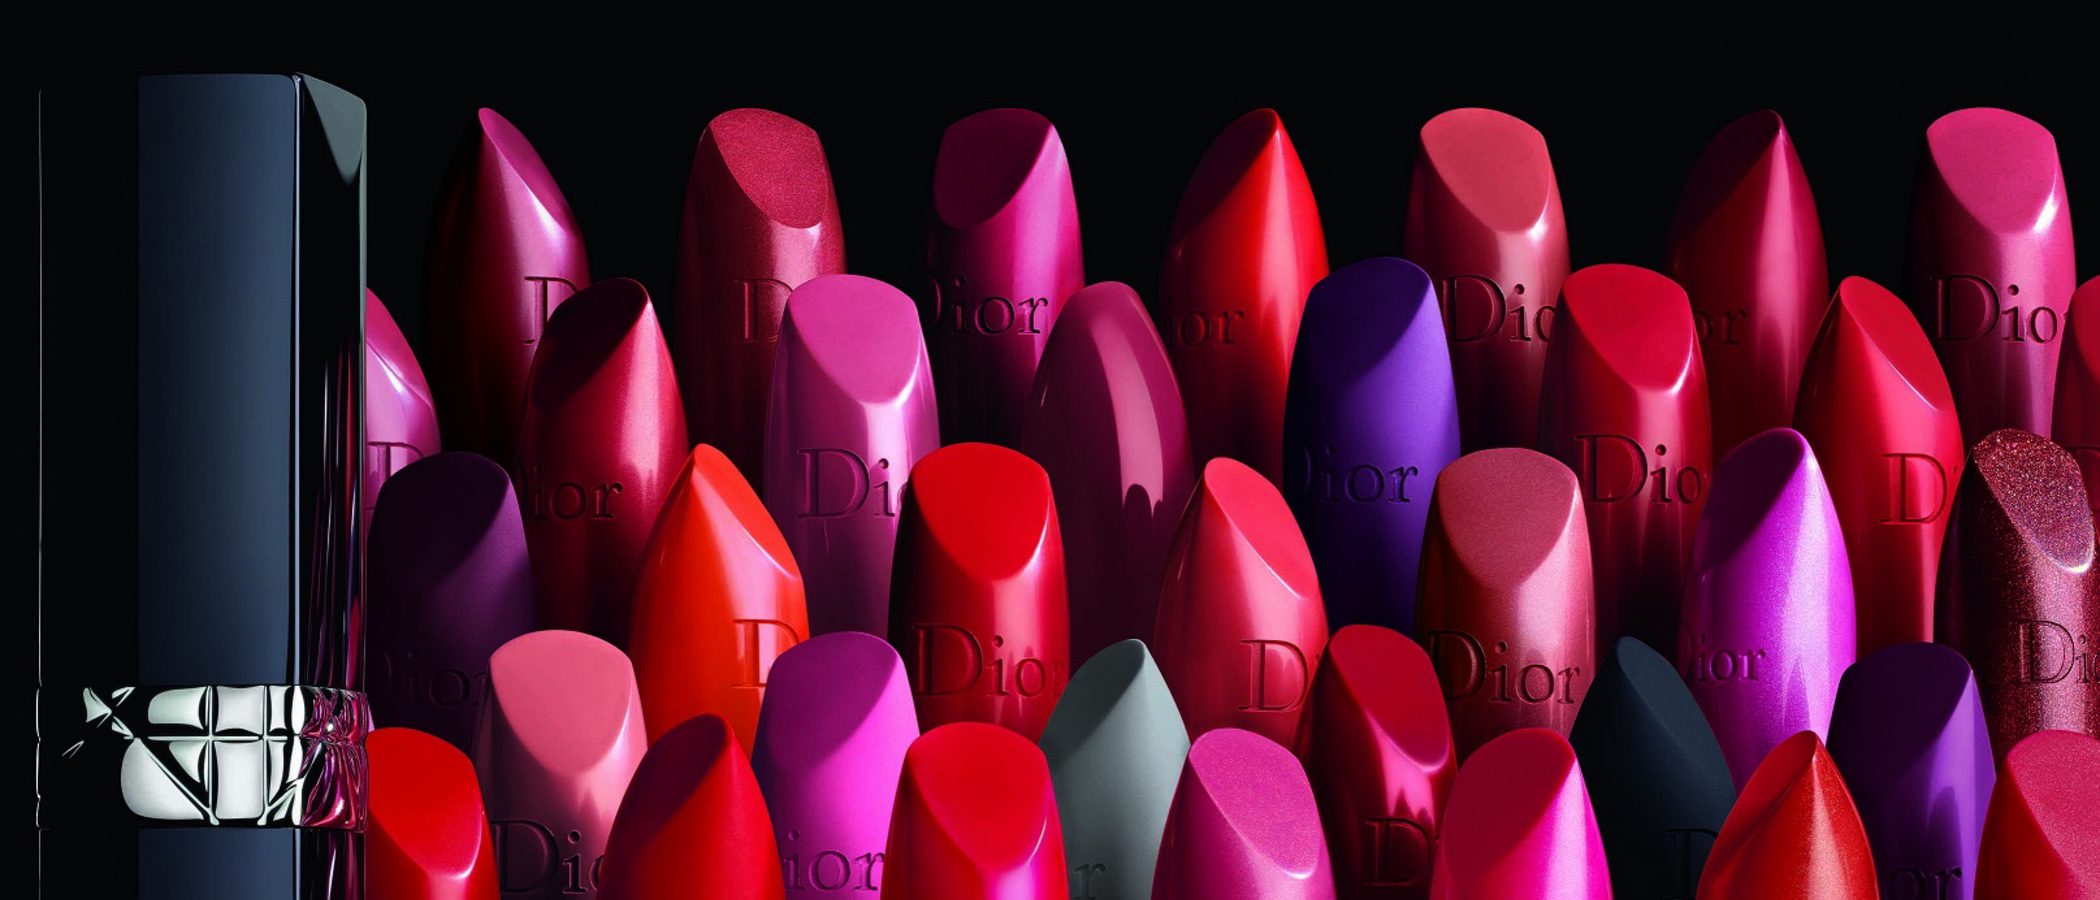 'Rouge Dior', la nueva colección de labiales de Dior con Natalie Portman